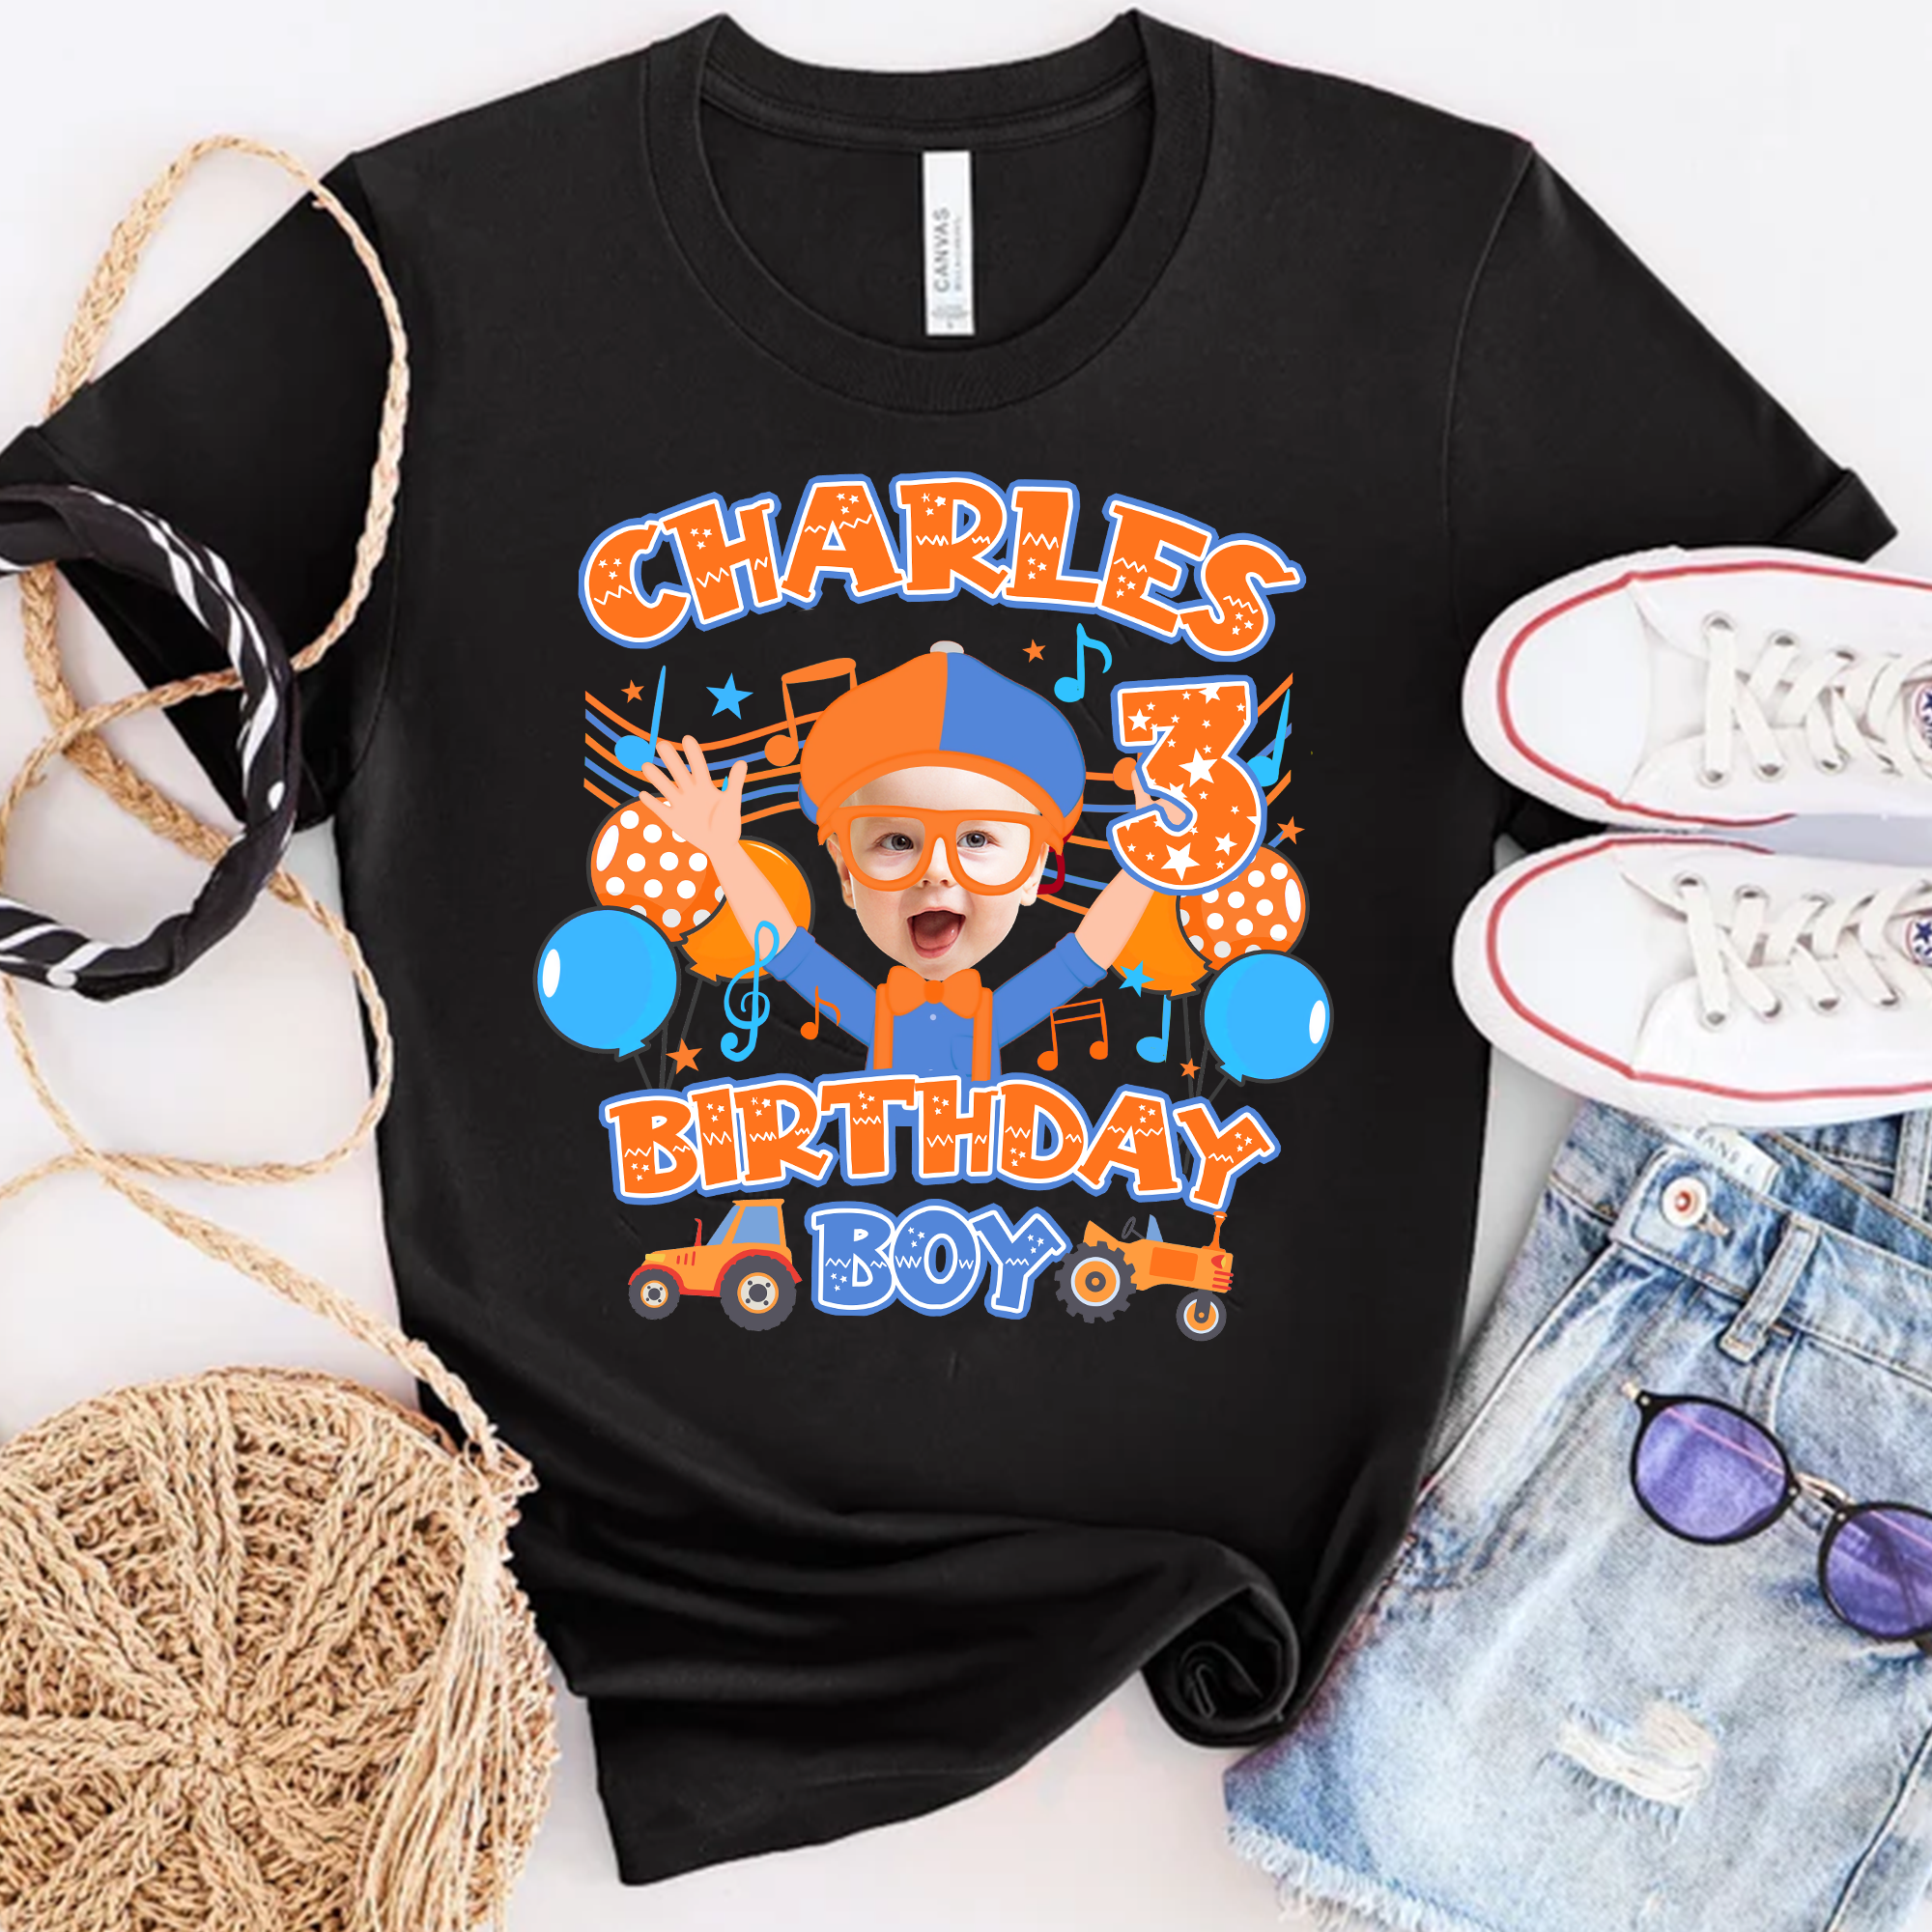 Blippi Birthday Boy Shirts, Personalized Blippi Birthday Shirt, Blippi Theme Birthday Boy, Blippi Boy Shirt, Matching Family Blippi Shirts